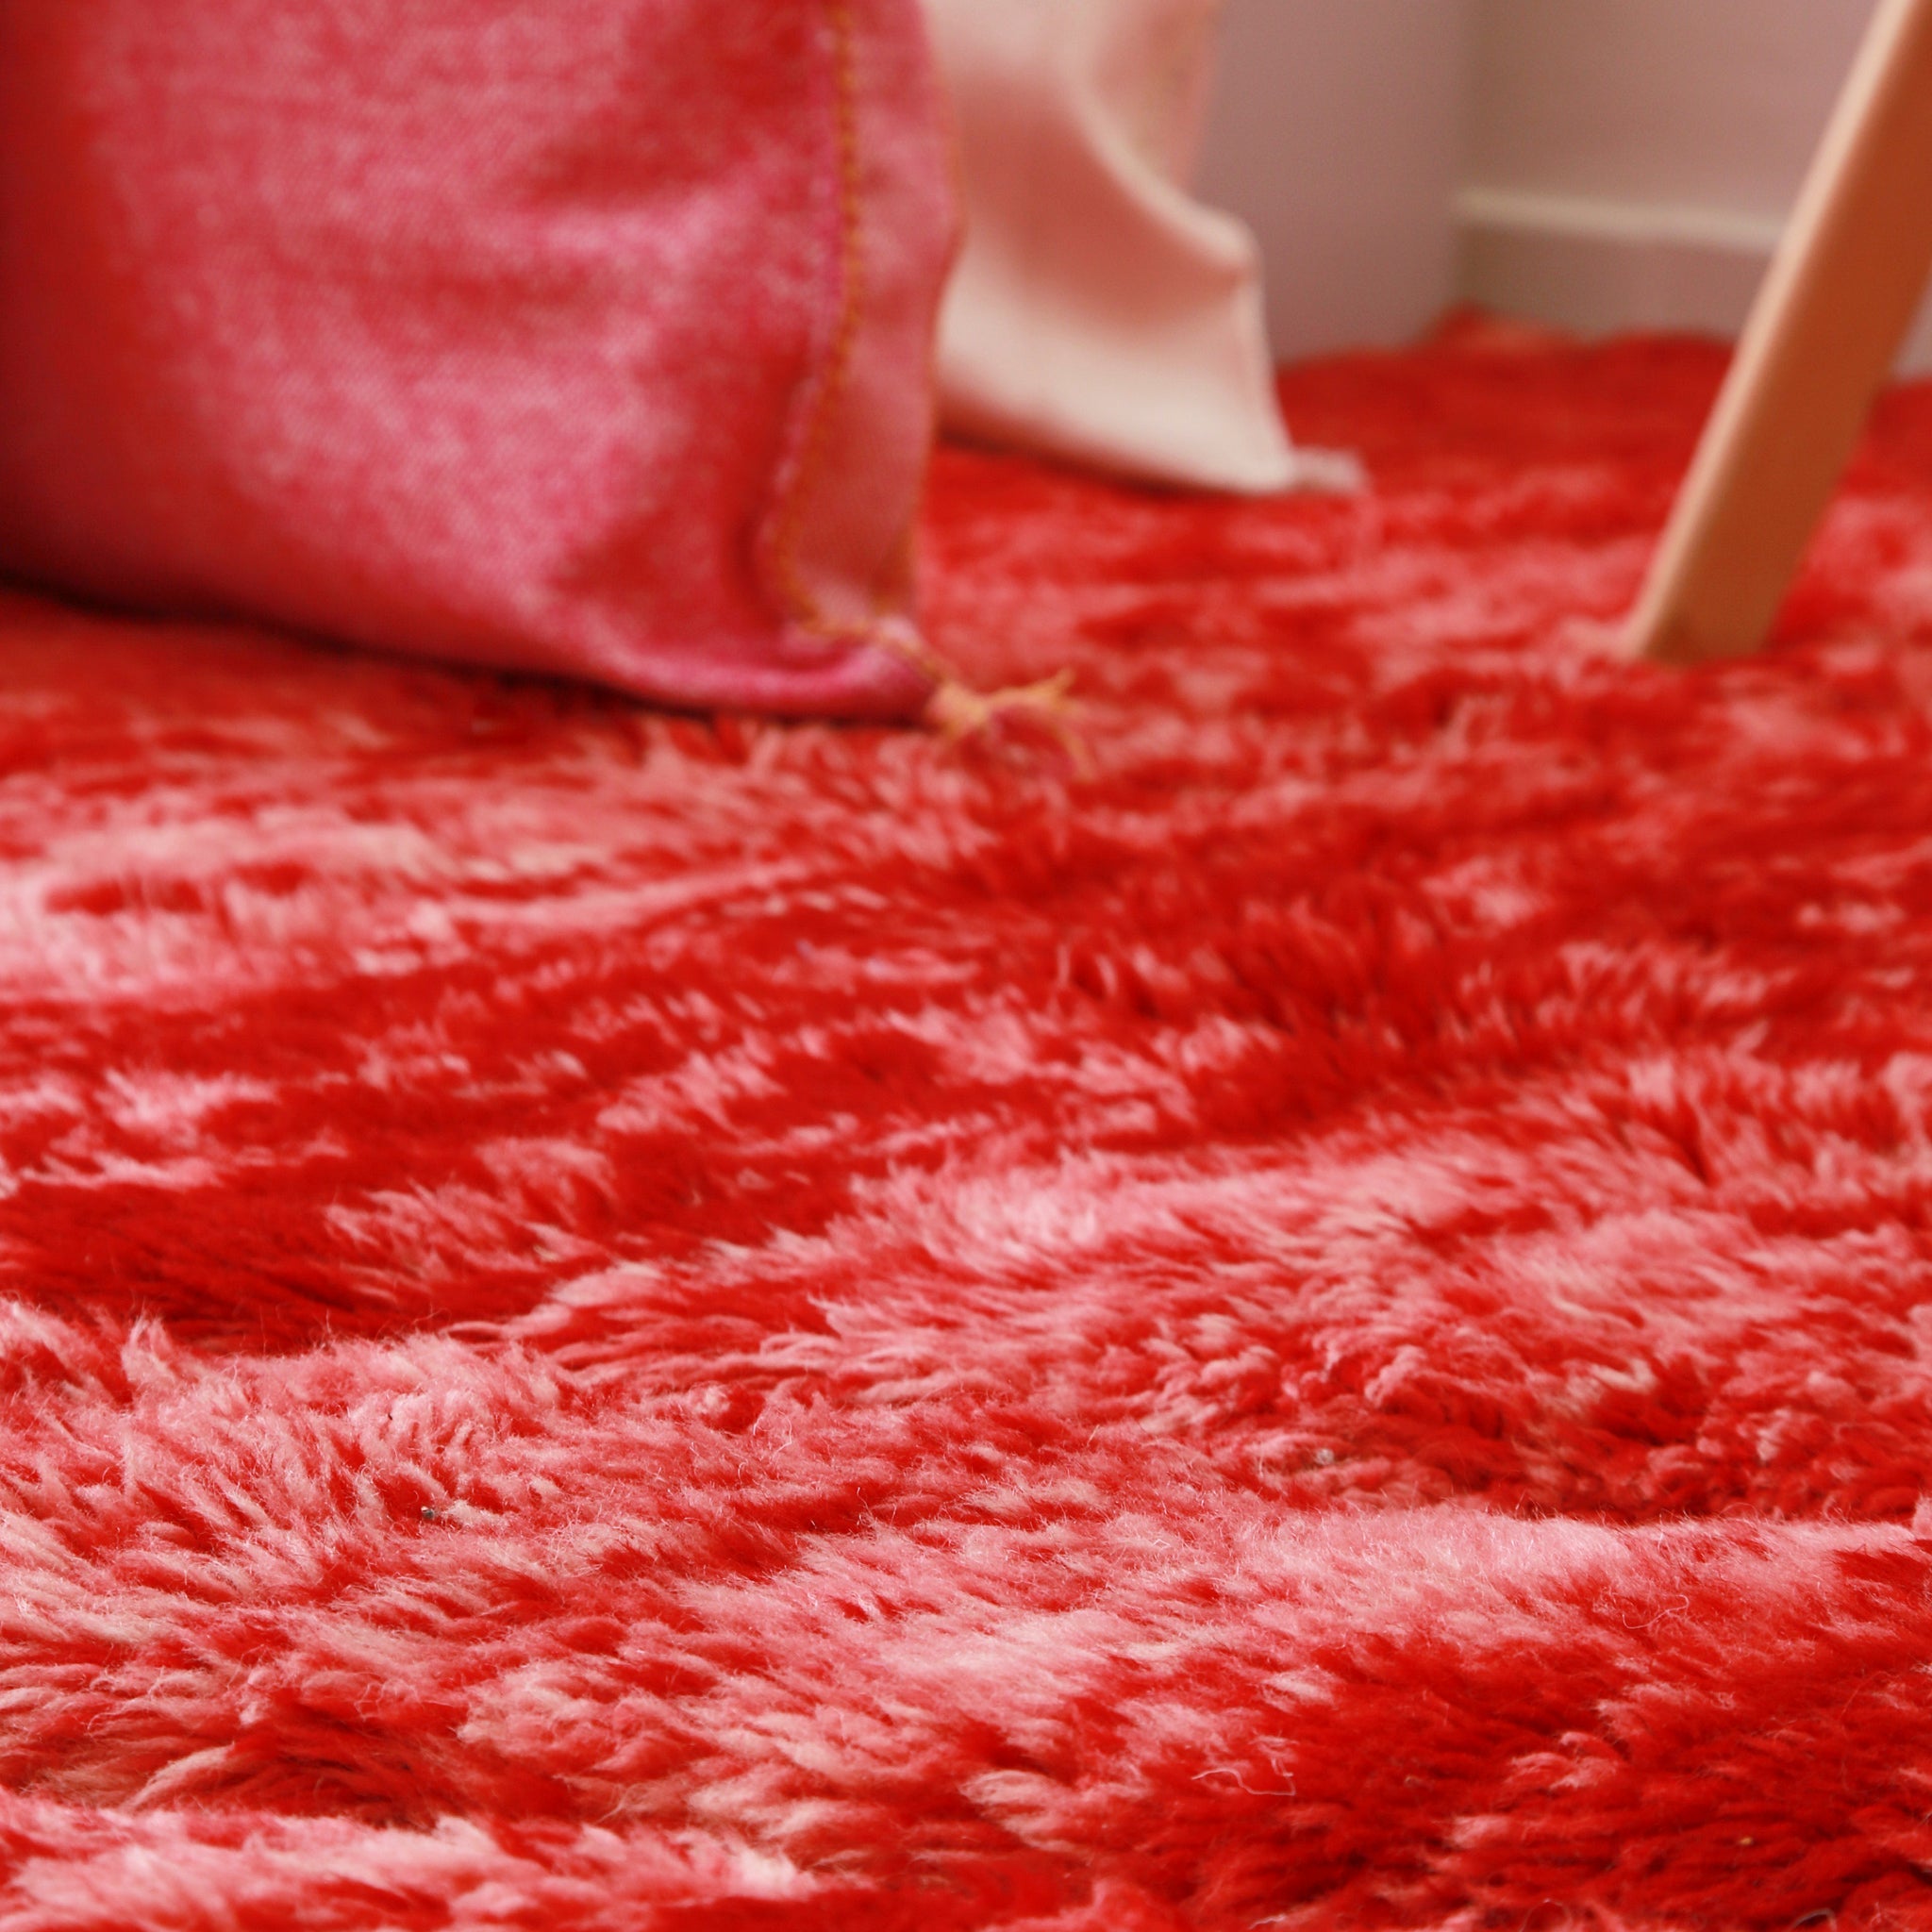 dettaglio dei lunghi peli di lana dalle sfumature di rosso fuoco di un tappeto beni mrirt